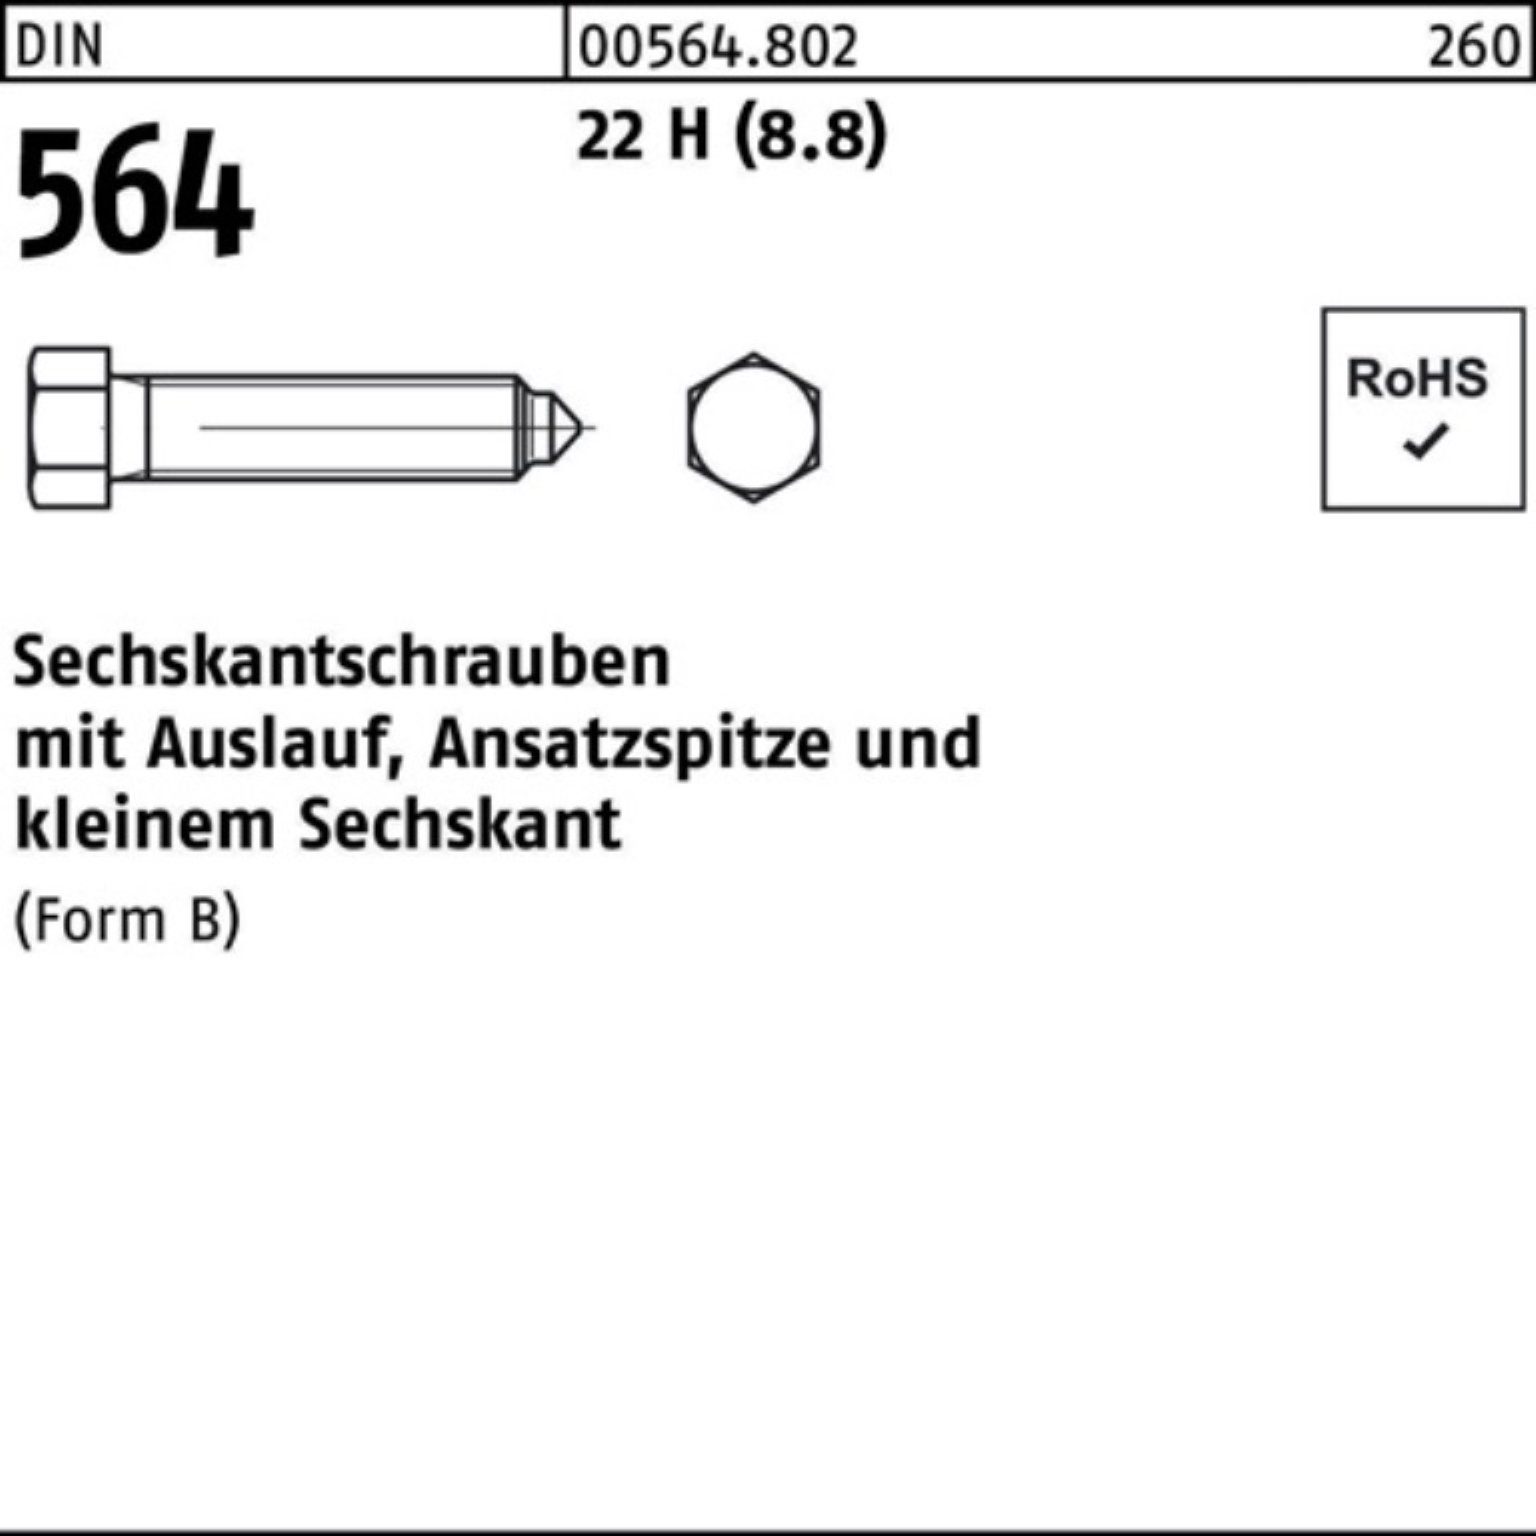 Reyher Sechskantschraube 100er Pack Sechskantschraube DIN 564 Ansatzspitze/Auslauf BM 10x 60 22